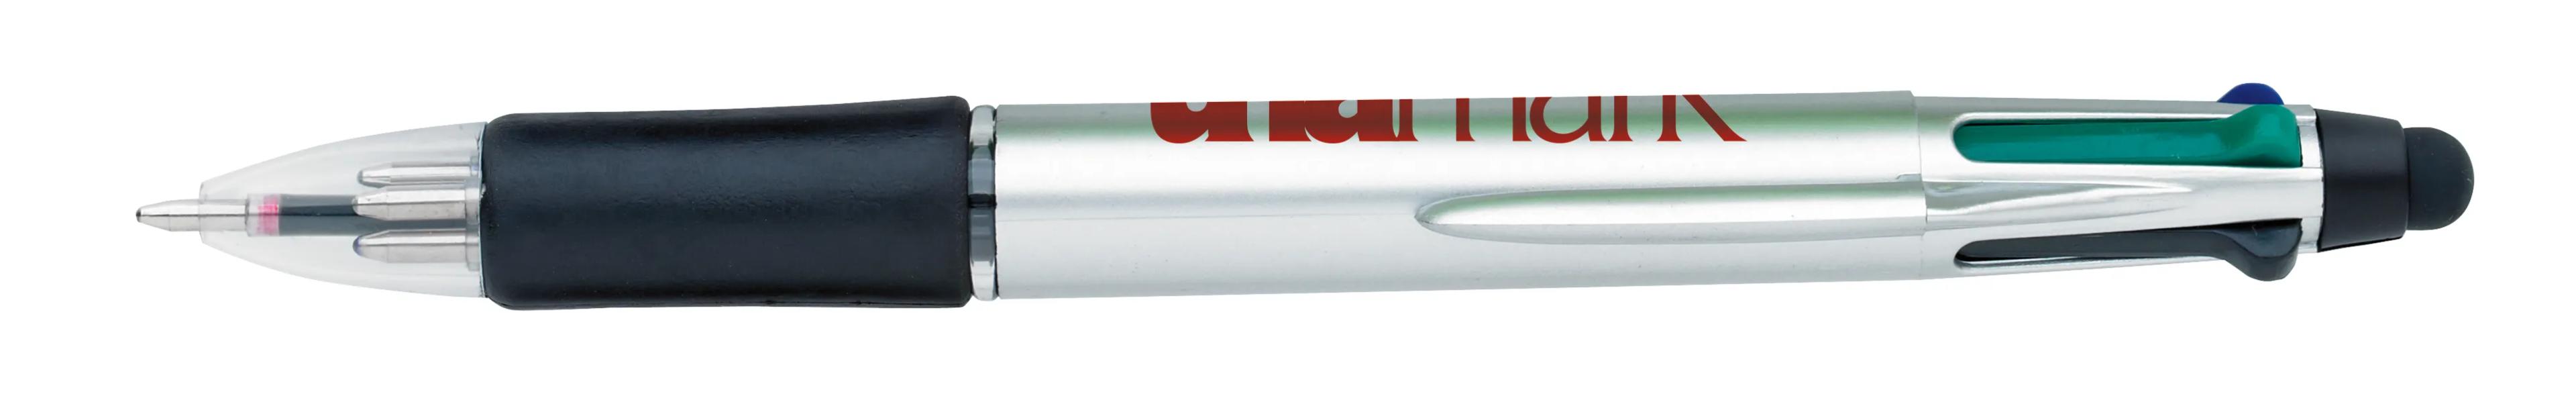 Orbitor Metallic Stylus Pen 26 of 56